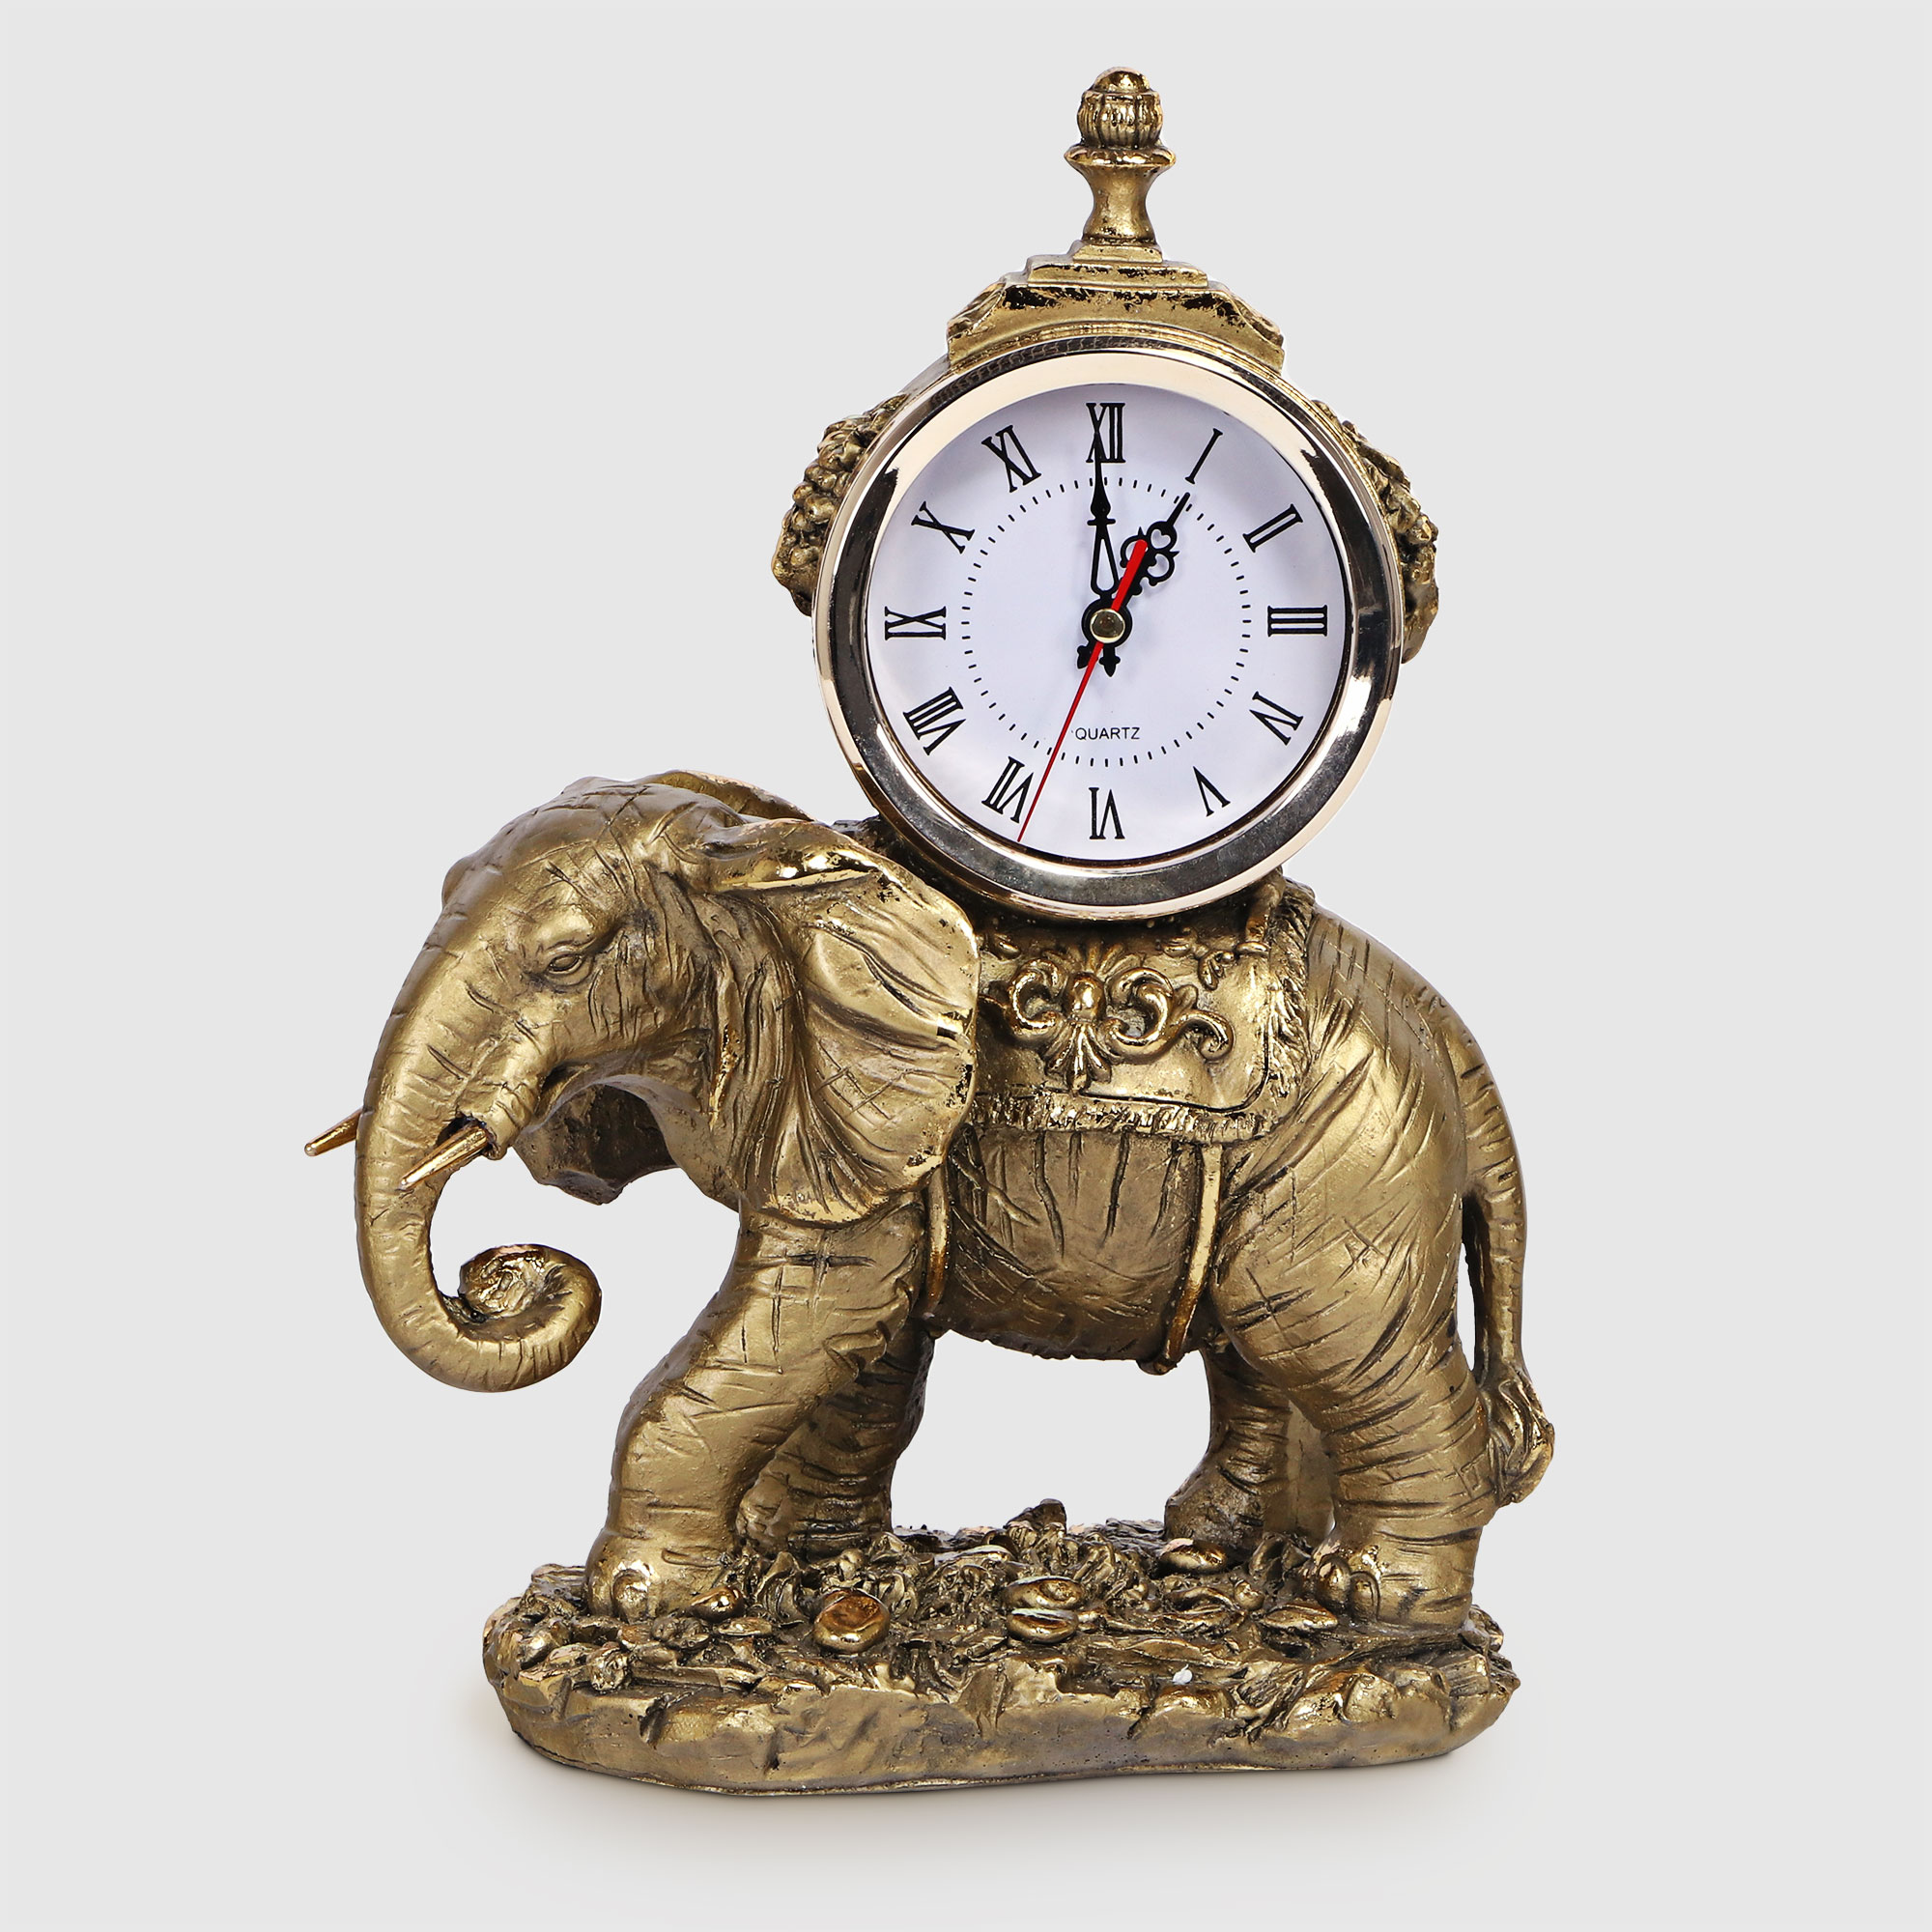 Часы Тпк полиформ слон на камне бронзовый, высота 31 см вешалка настенная тпк полиформ голова барана высота 20 см